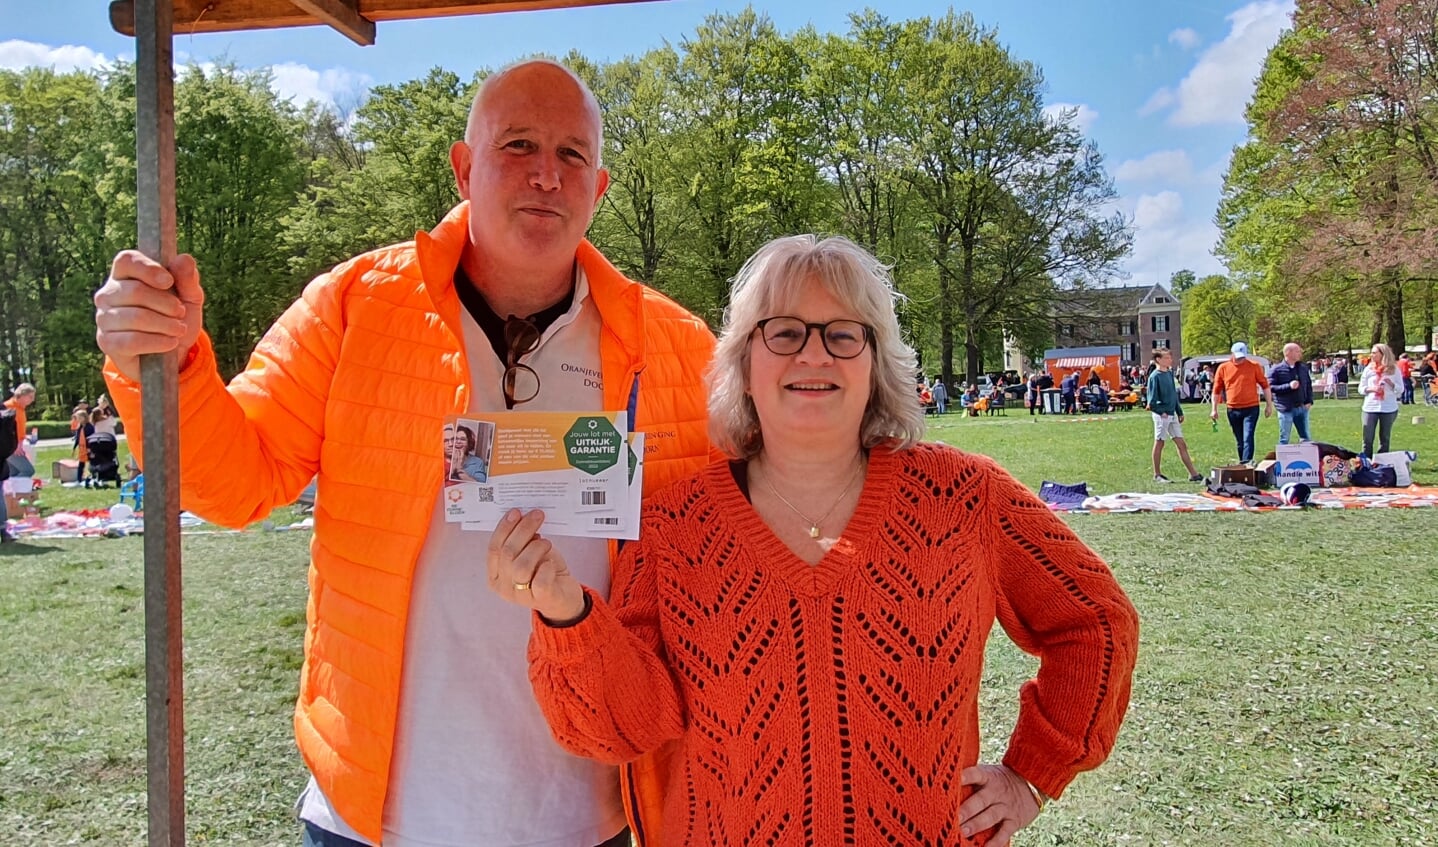 Voorzitter Oranjevereniging Frans van der Craats steunt lotenverkoop Zonnebloem Doorn